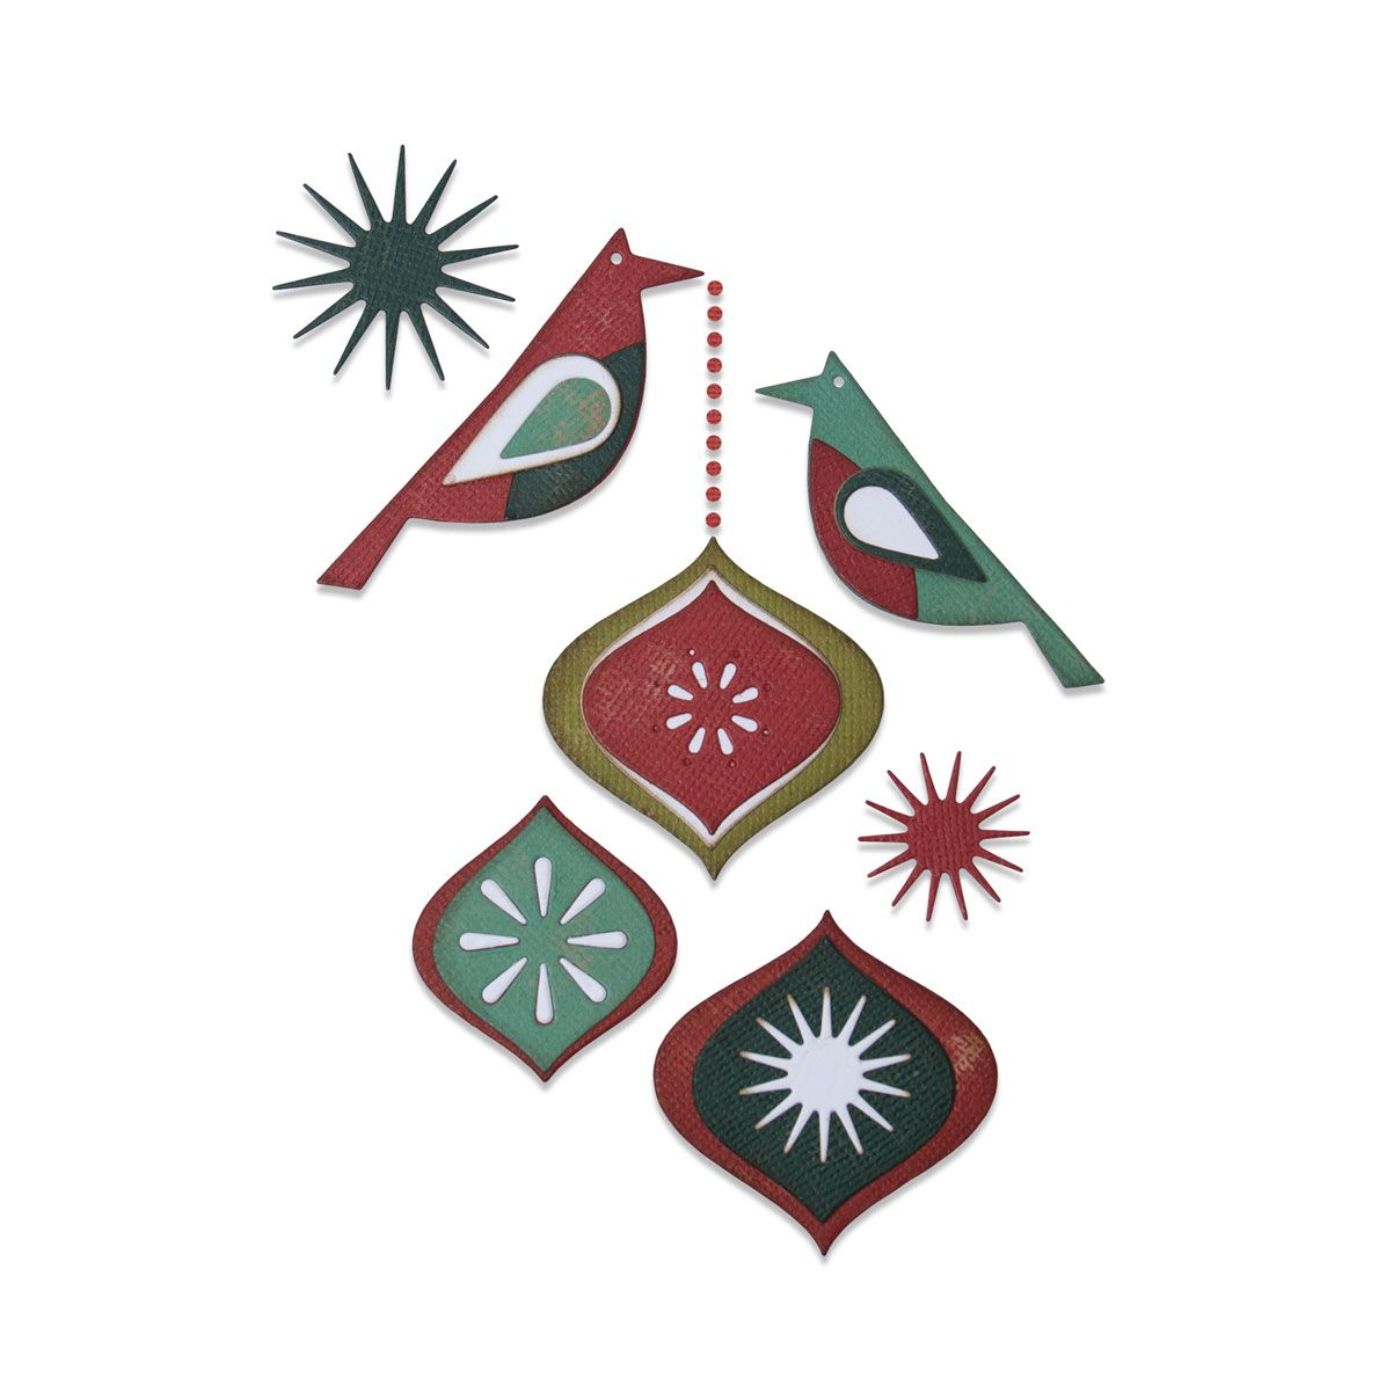 Troqueles Thinlits Tim Holtz Pájaros decorativos - Navidad